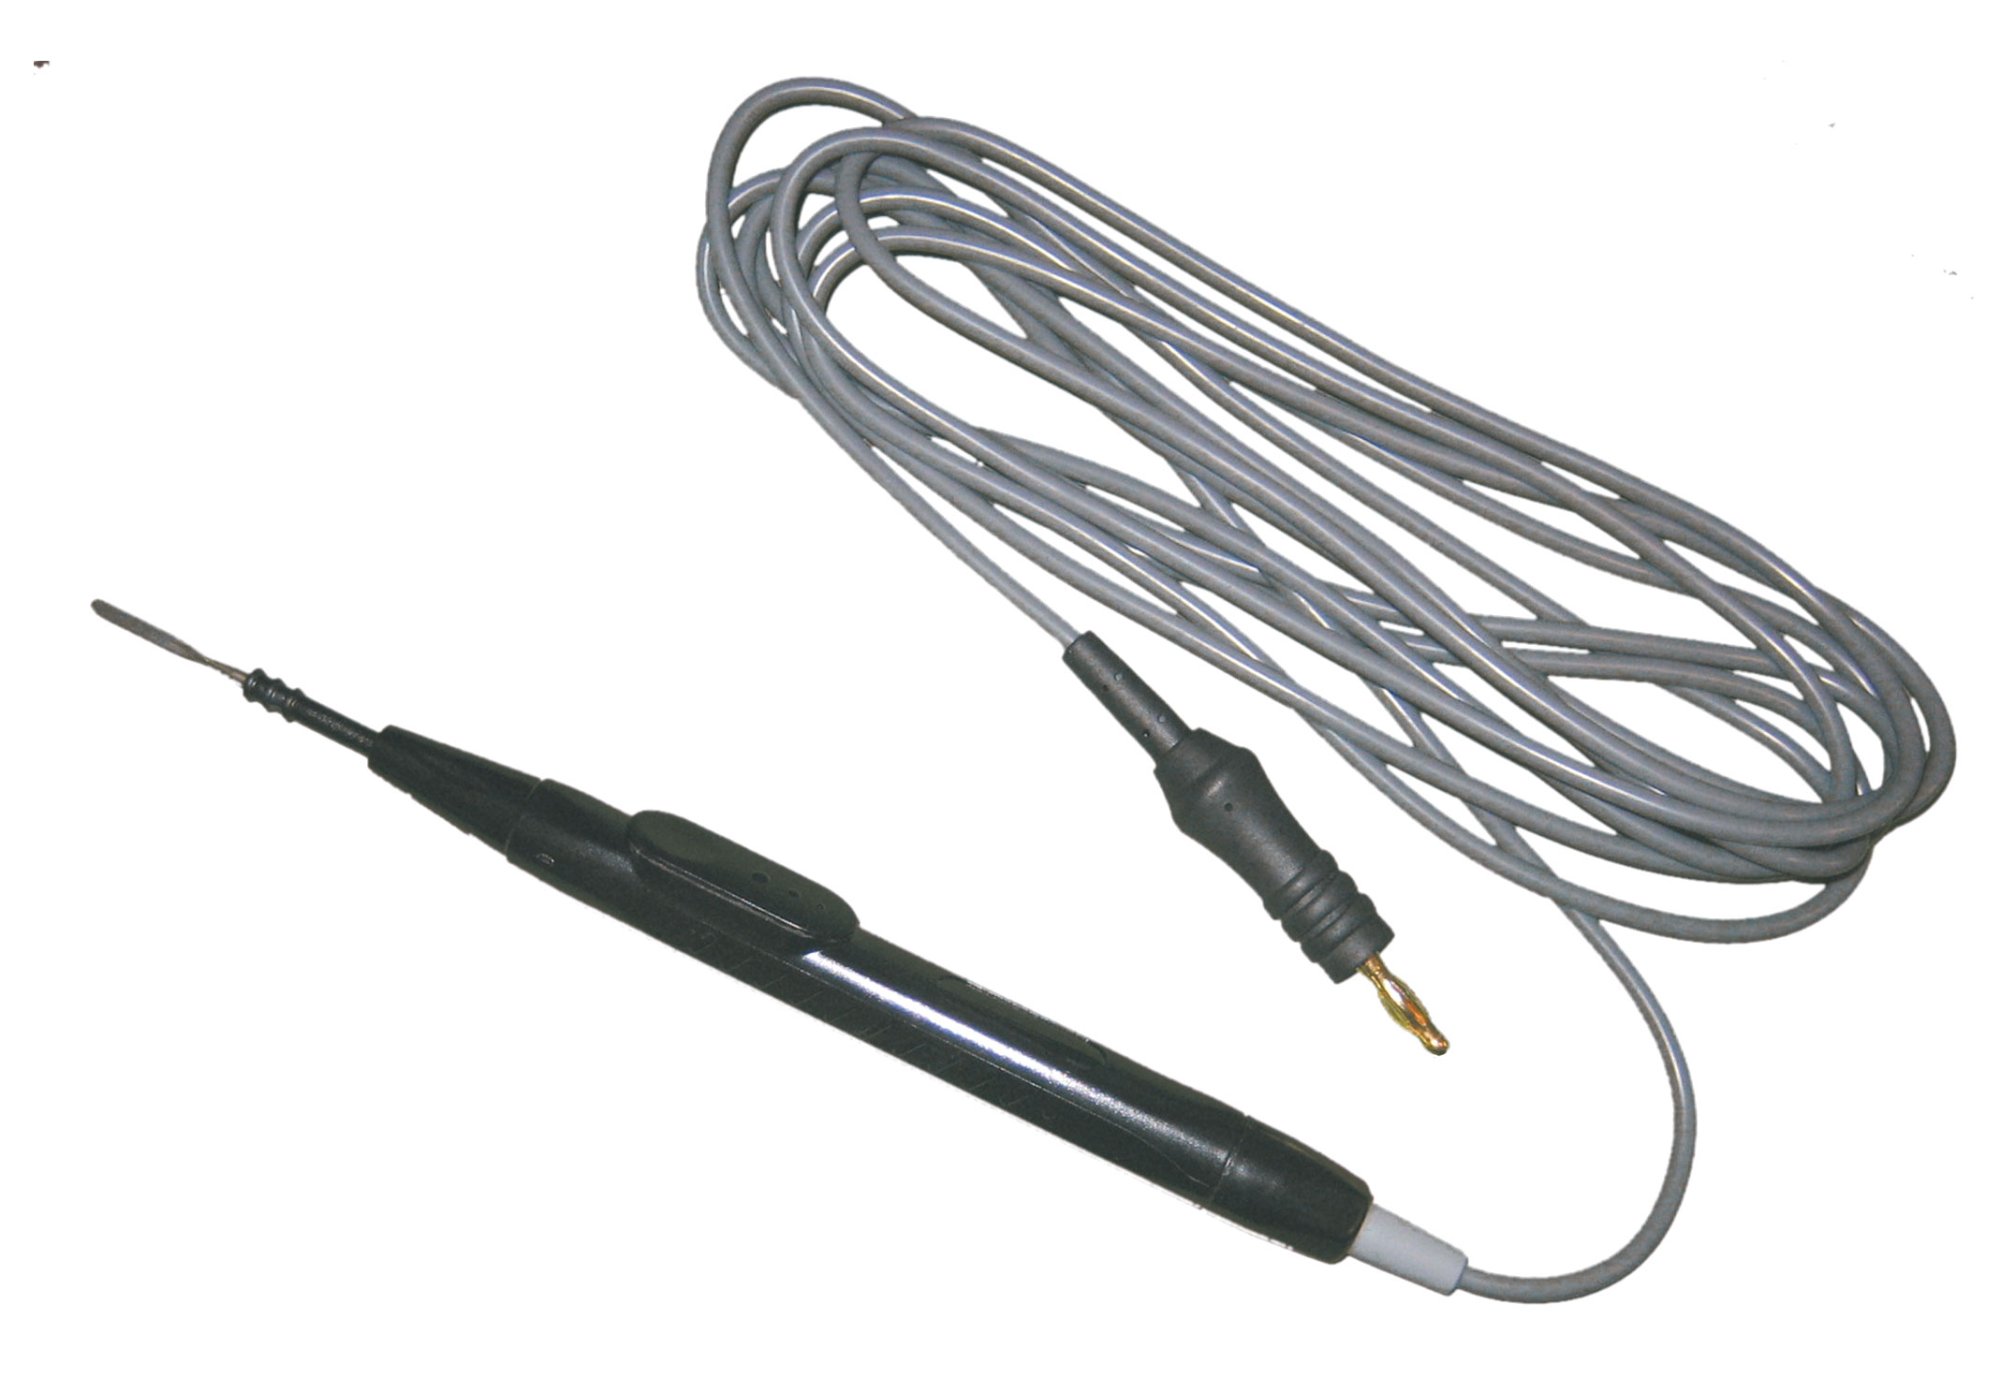 Mango electrobisturí reutilizable con conexión 4 mm plug, para control con pedal, 100 esterilizaciones. Cable de 300 cm